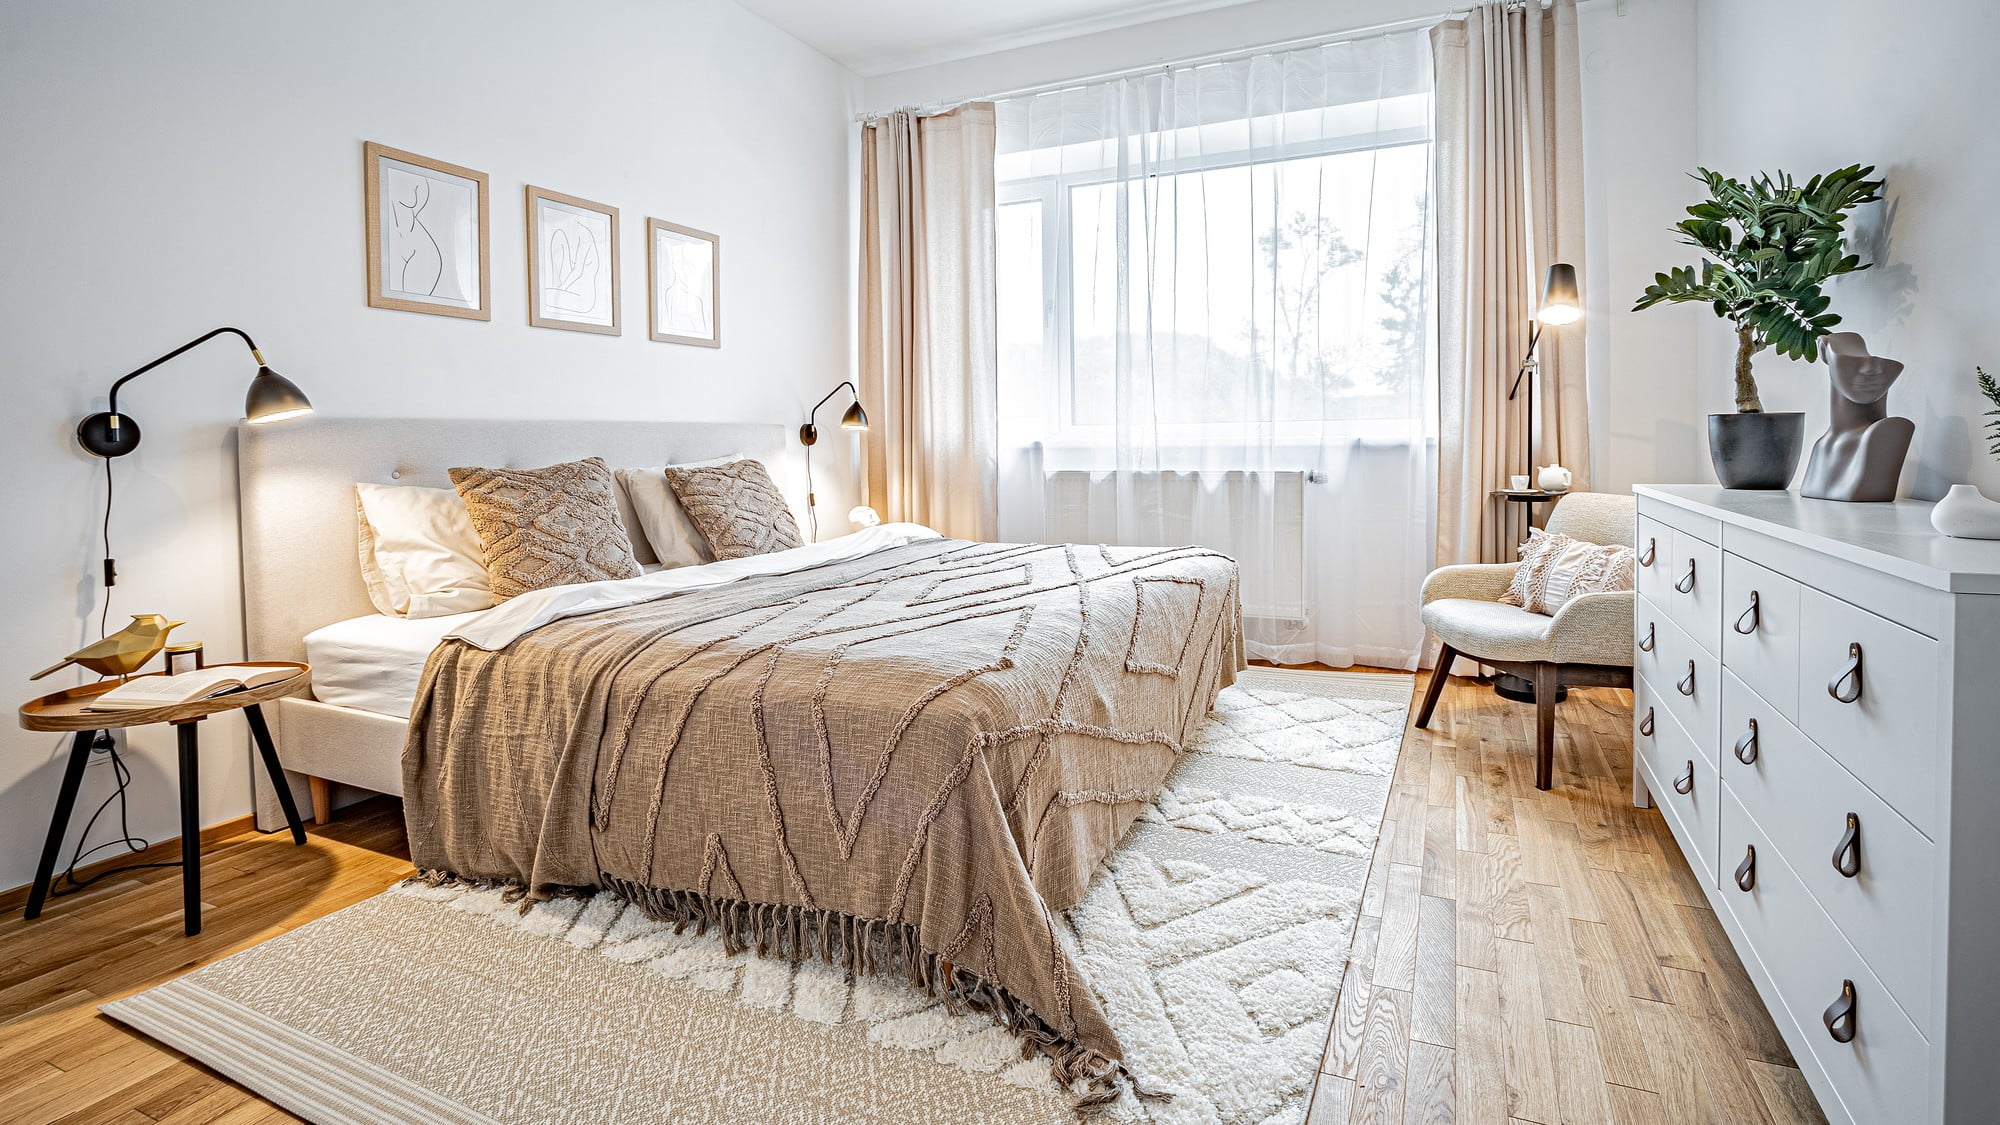 Nowoczesna sypialnia - inspiracje dla wnętrza w monochromatycznej kremowej palecie.